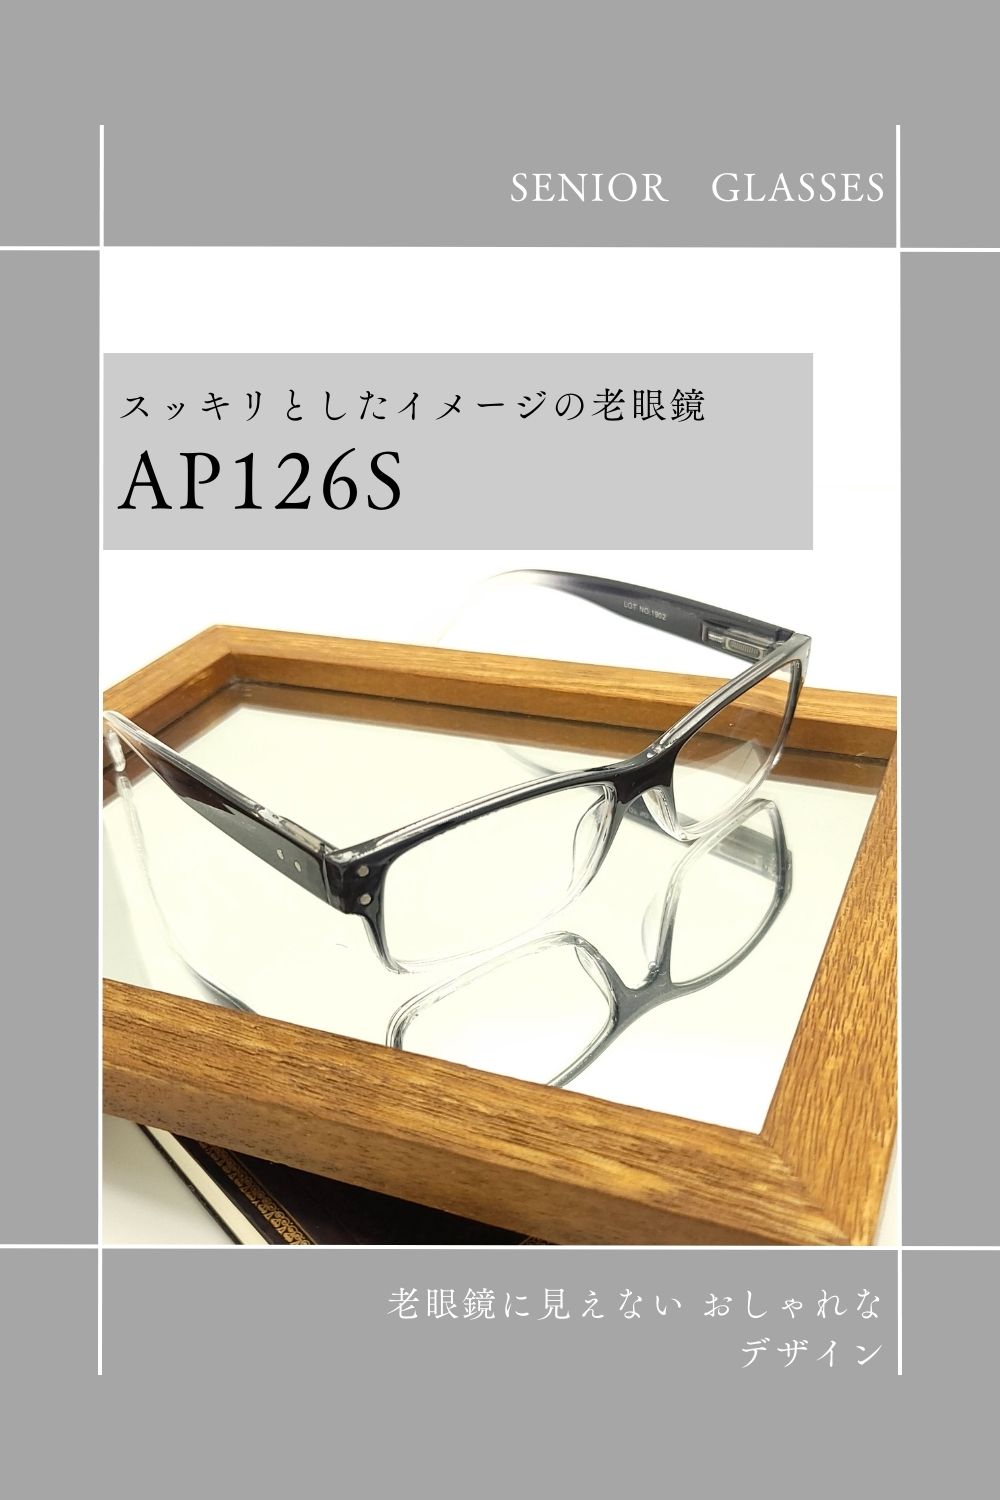 正面画像 | AP126S | AILEオリジナルブランド シニアグラスラインナップ | 有限会社エール